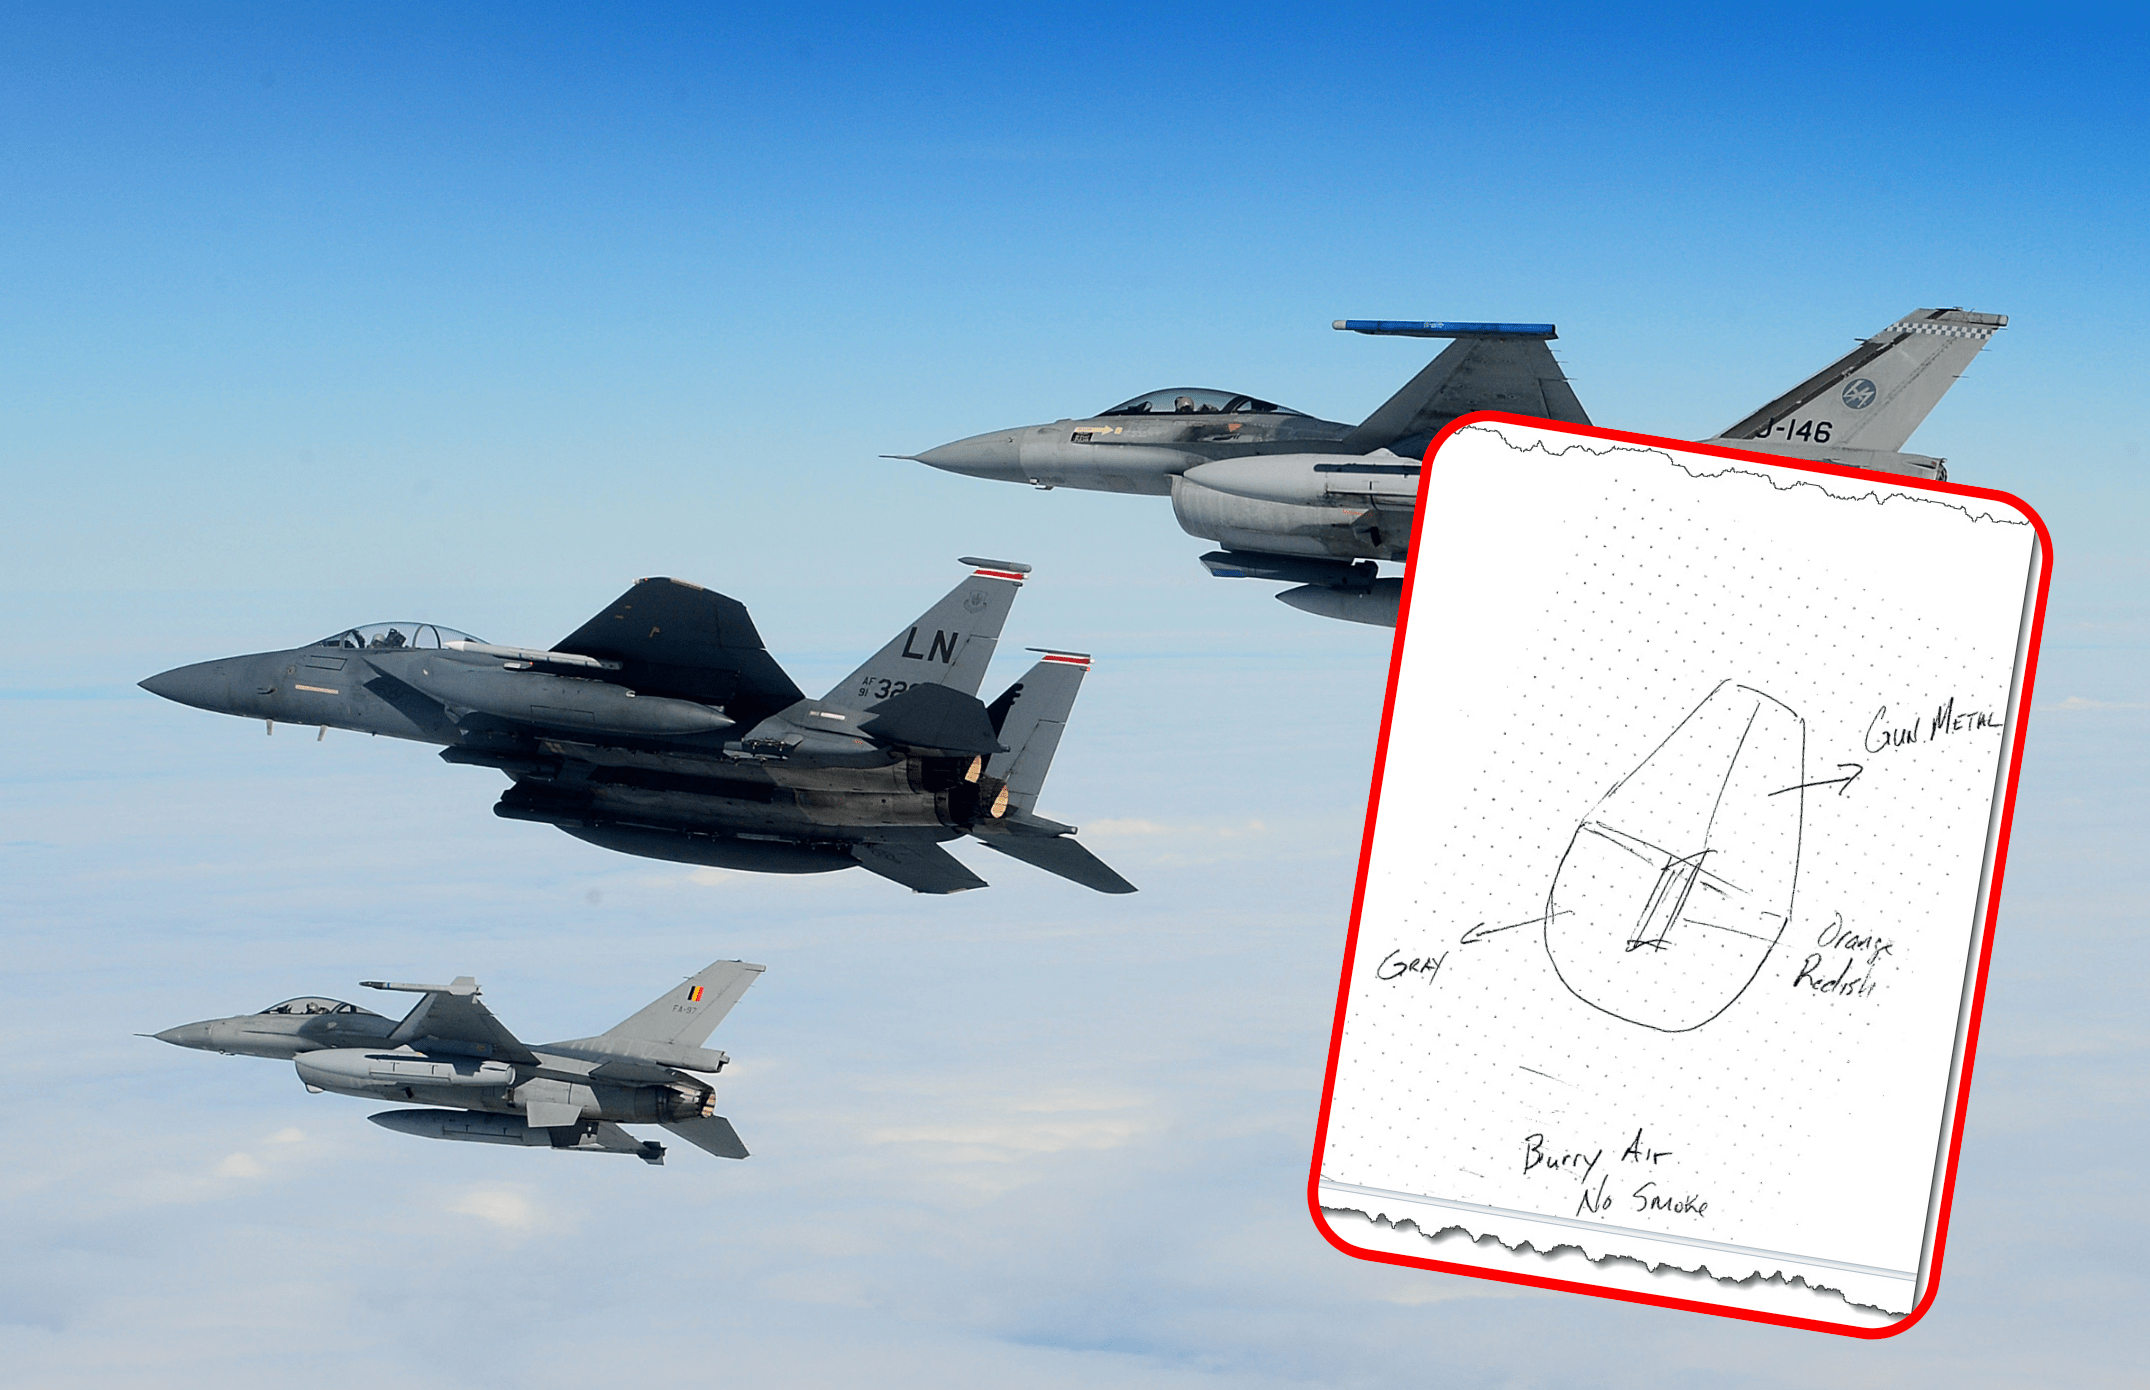 Trzy myśliwce F-16 w formacji lotniczej na tle bezchmurnego nieba, z diagramem pokazującym części samolotu wprowadzonym na pierwszym planie.